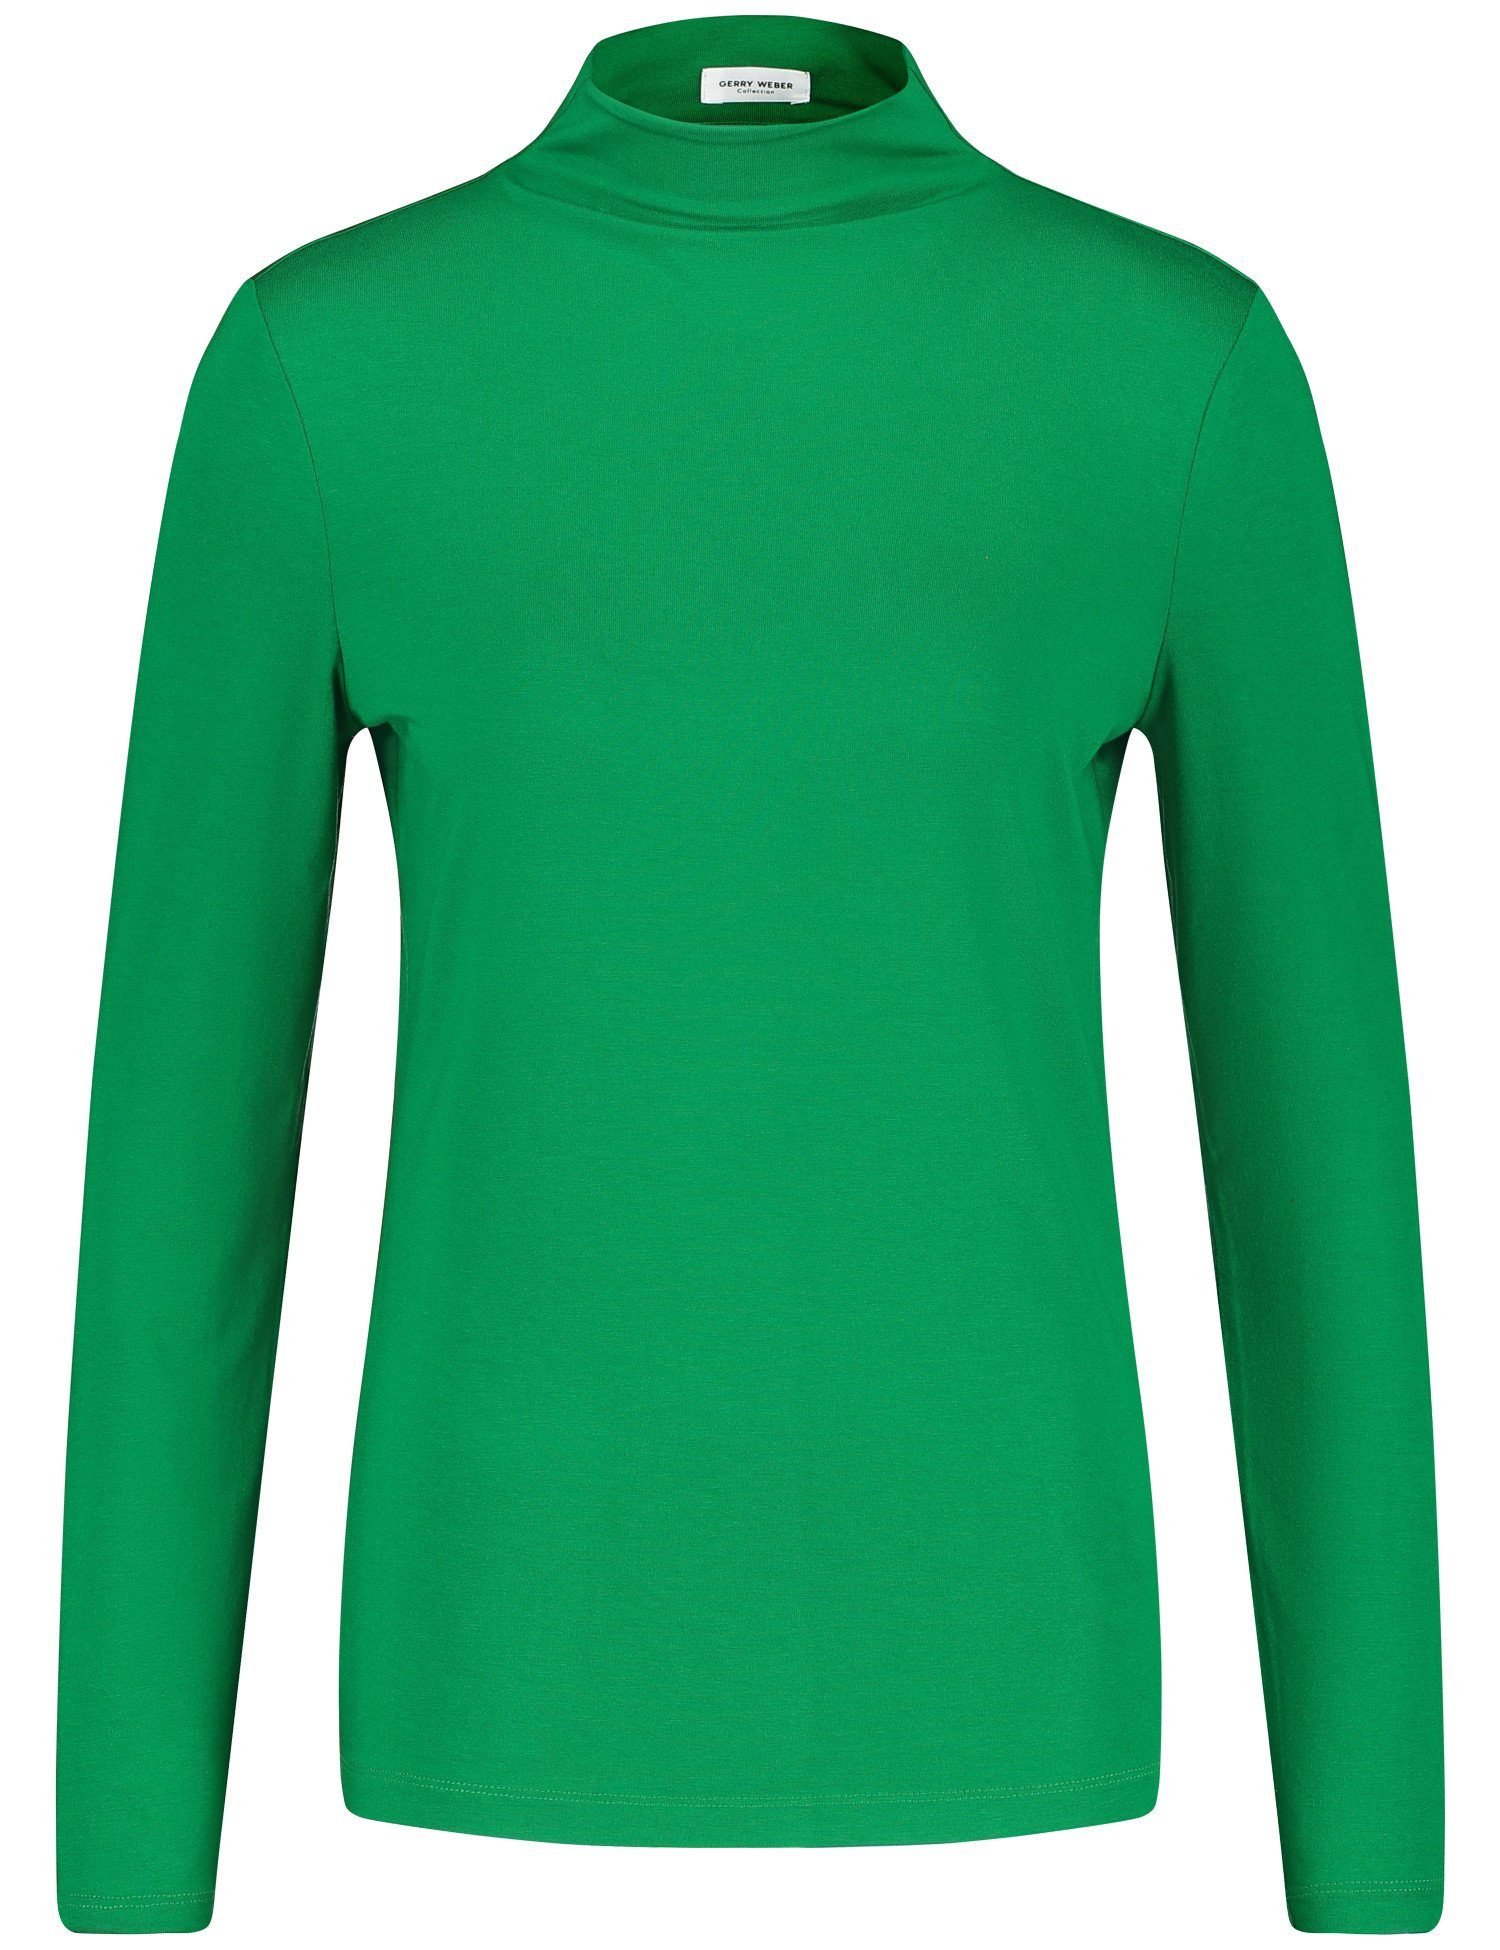 GERRY WEBER Bright Green Turtleneck Langarmshirt mit Langarmshirt